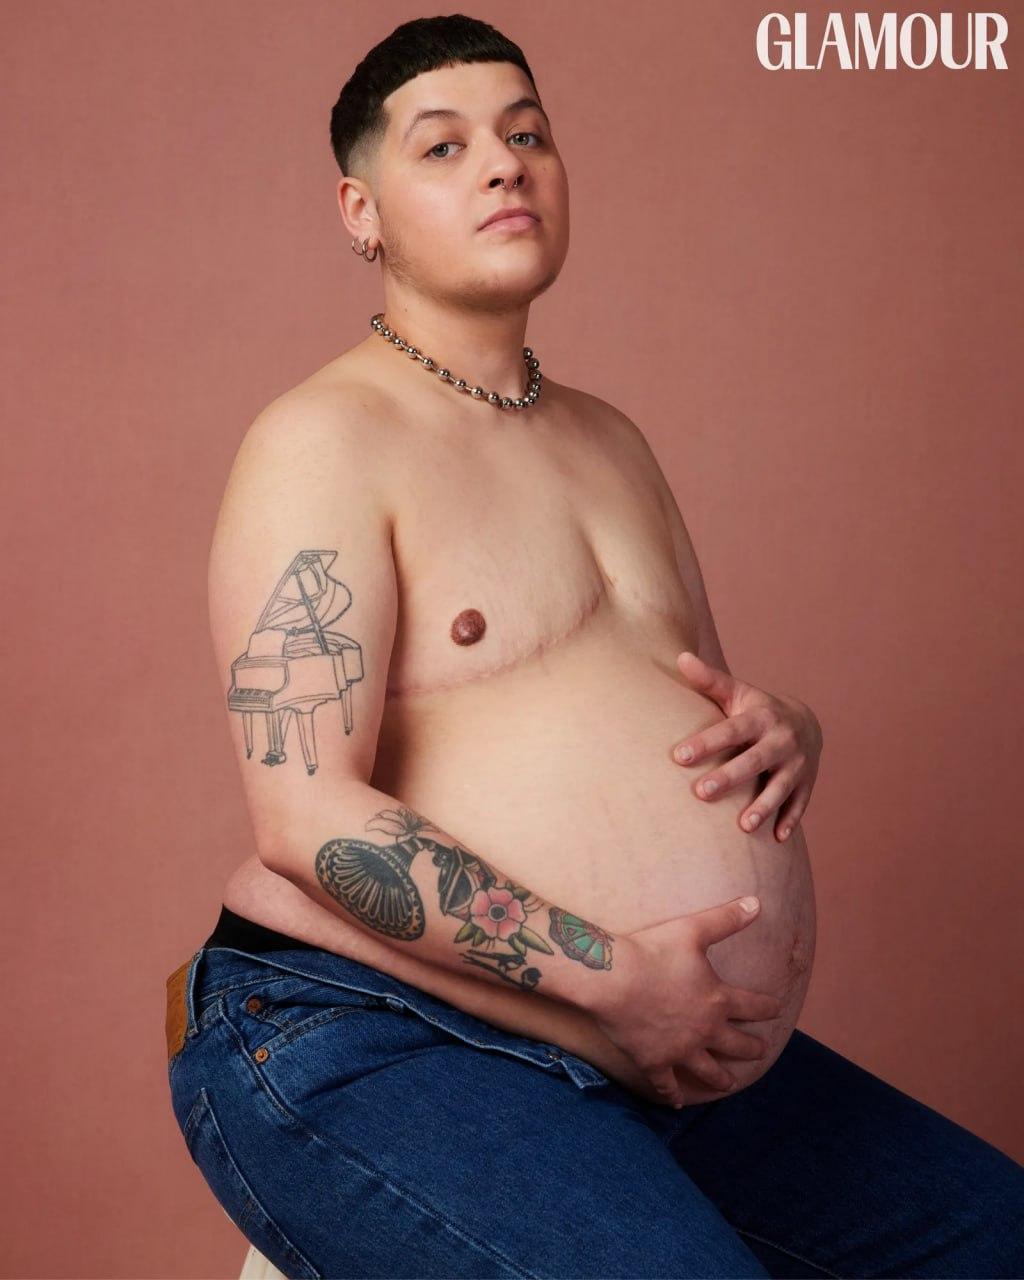 Модный журнал Glamour поместил на обложку беременного трансгендера Логана Брауна